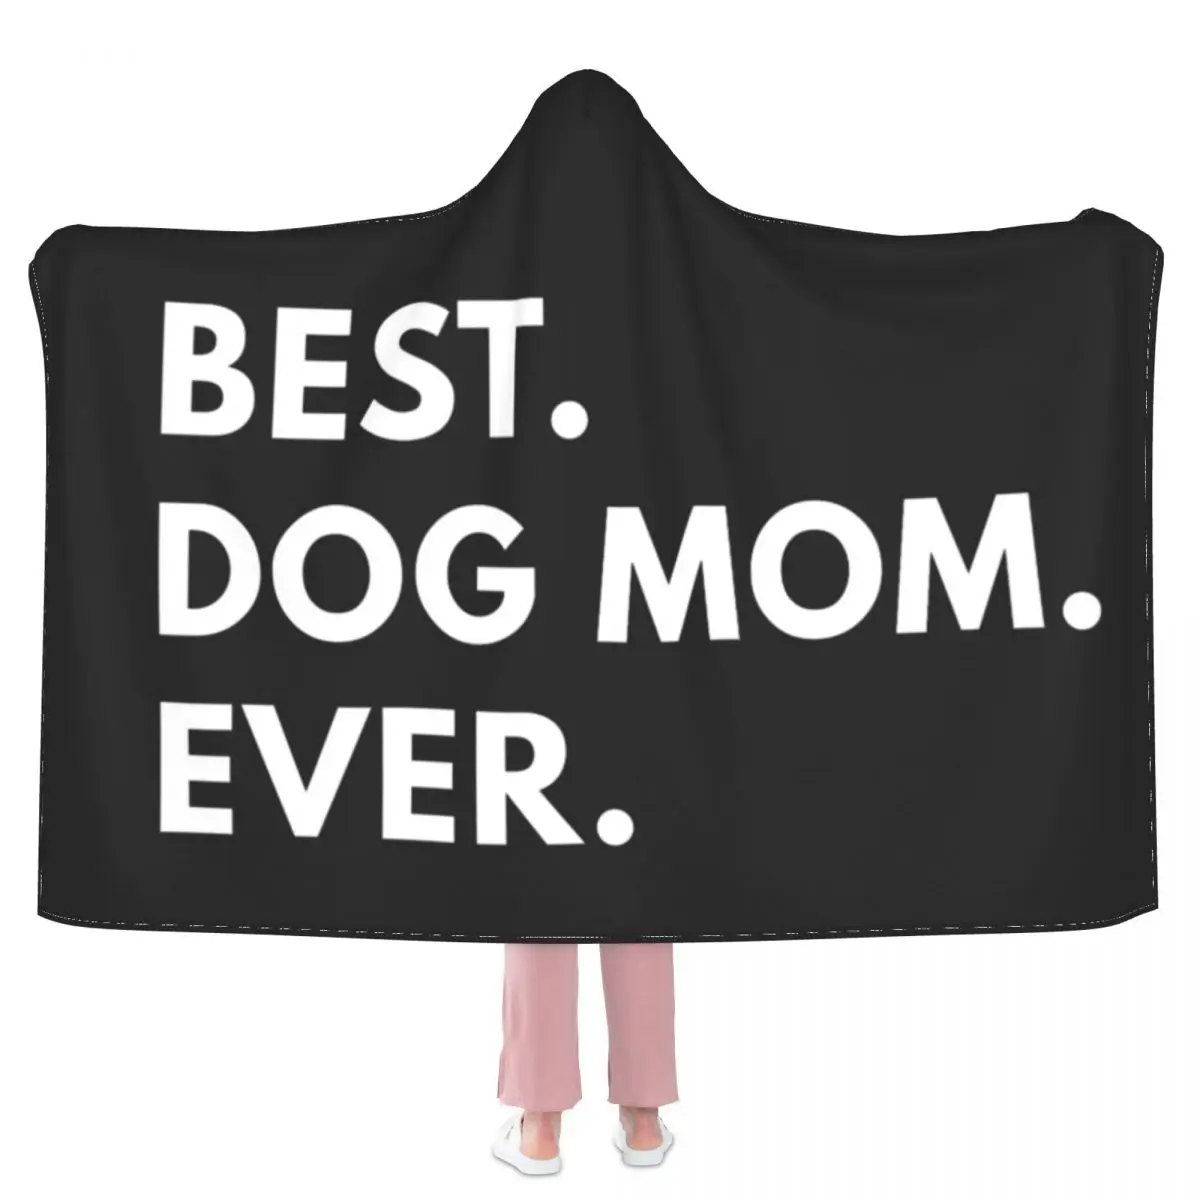 

Одеяло для лучшей собаки и мамы, подарок на день матери, модное милое покрывало с капюшоном, флисовое супермягкое одеяло для автомобиля